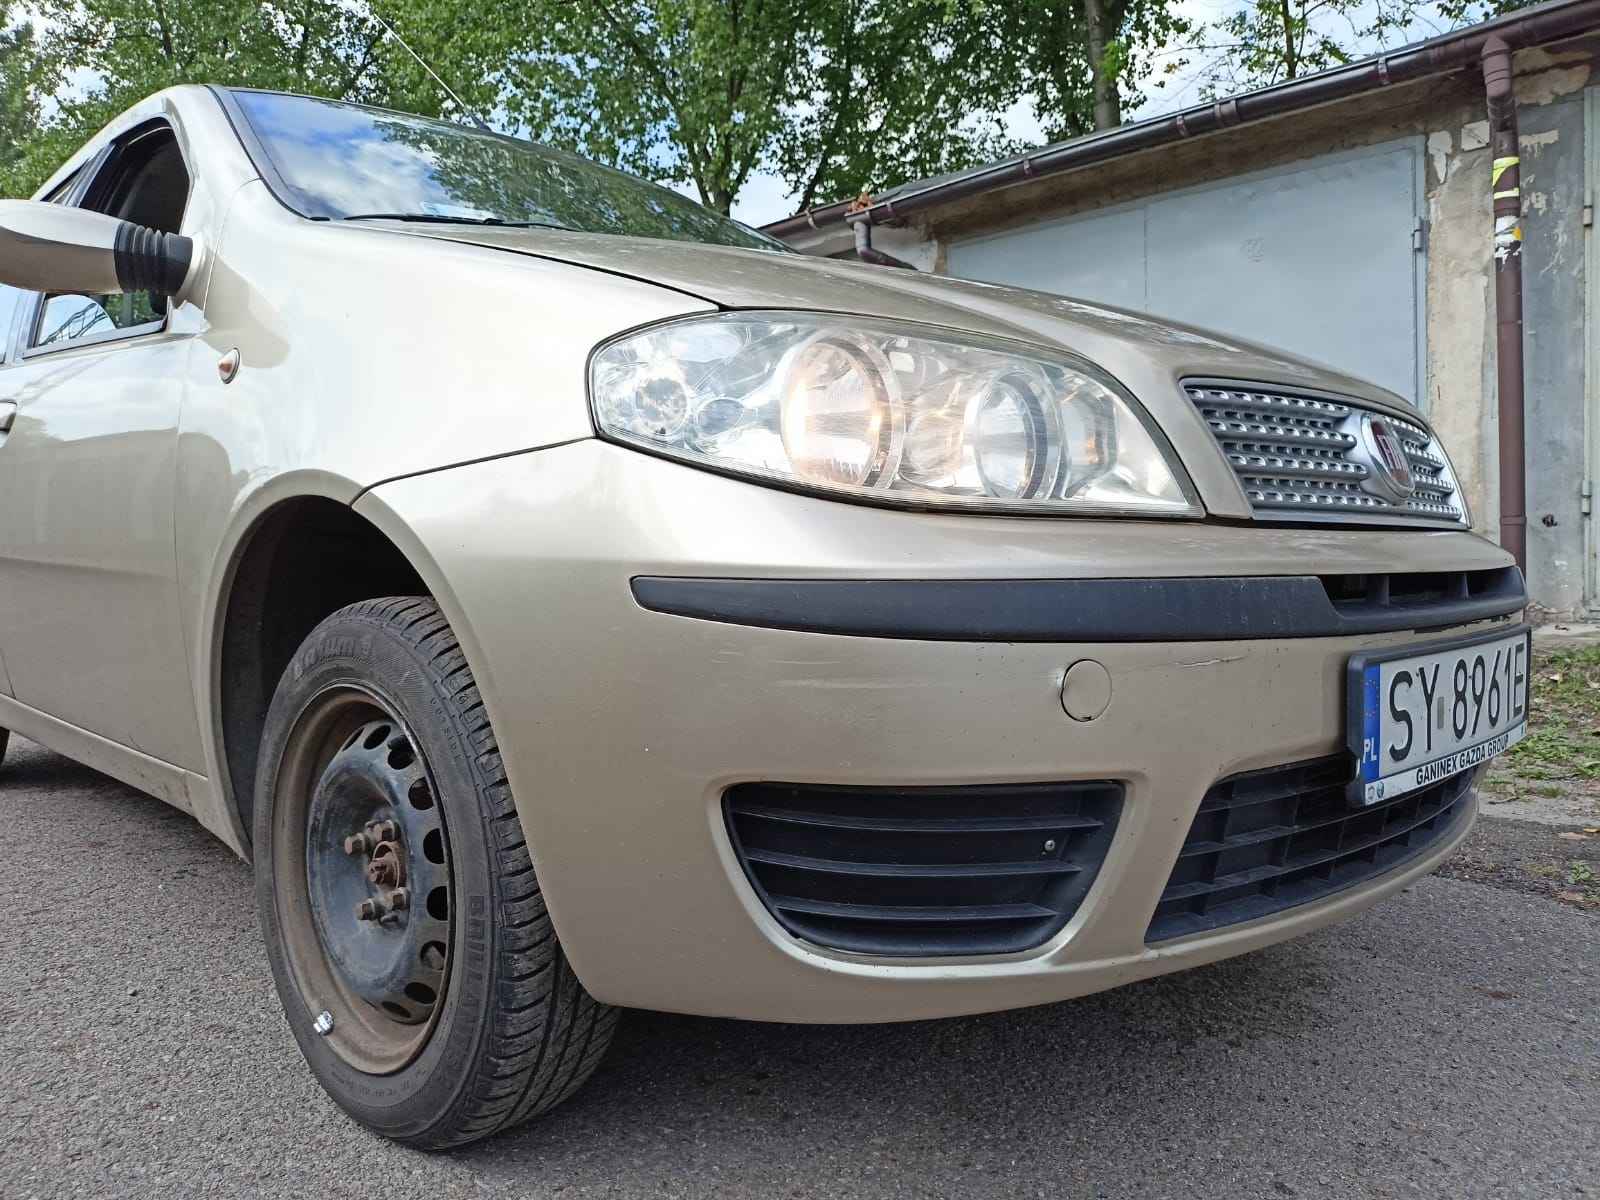 Sprzedaż Fiat Punto, rok prod. 2009, 50% ceny oszacowania. Piasek - zdjęcie 4